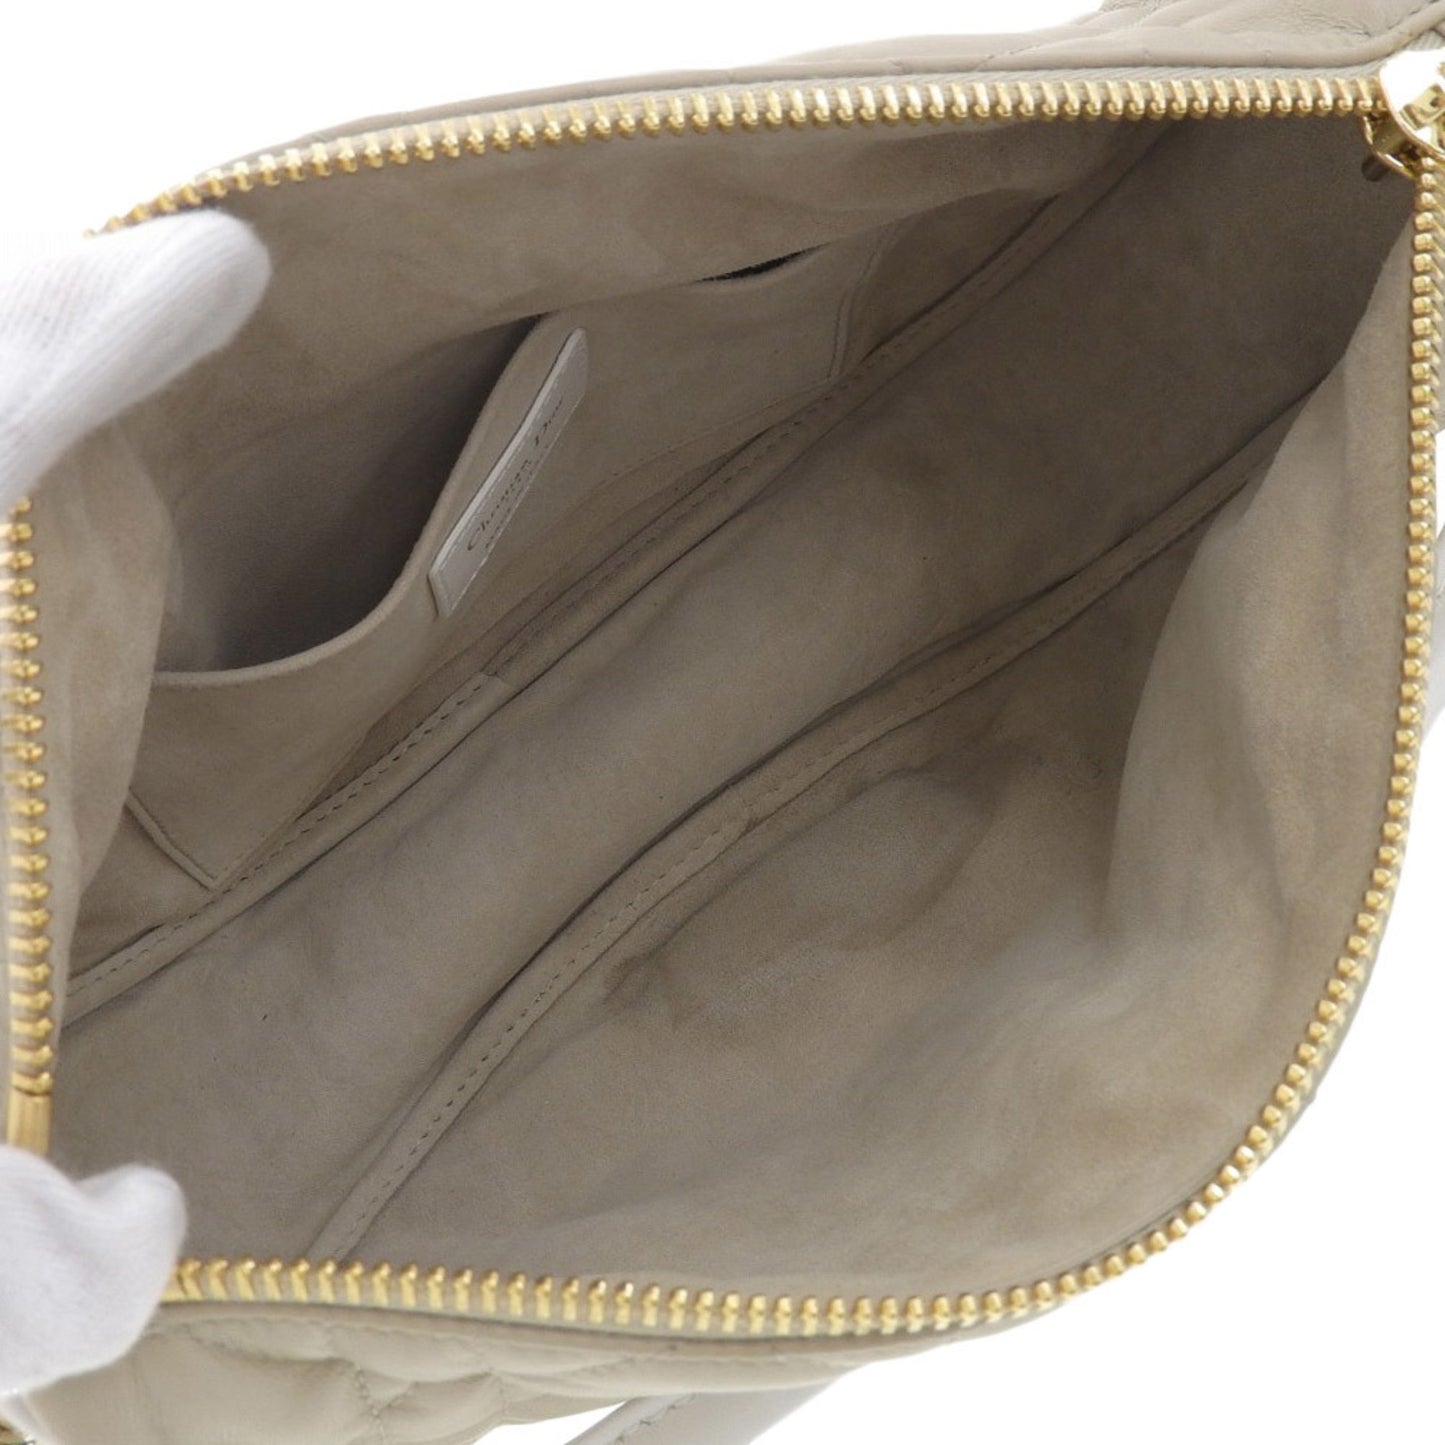 Dior Women's Leather Shoulder Bag with Elegant Design in Beige